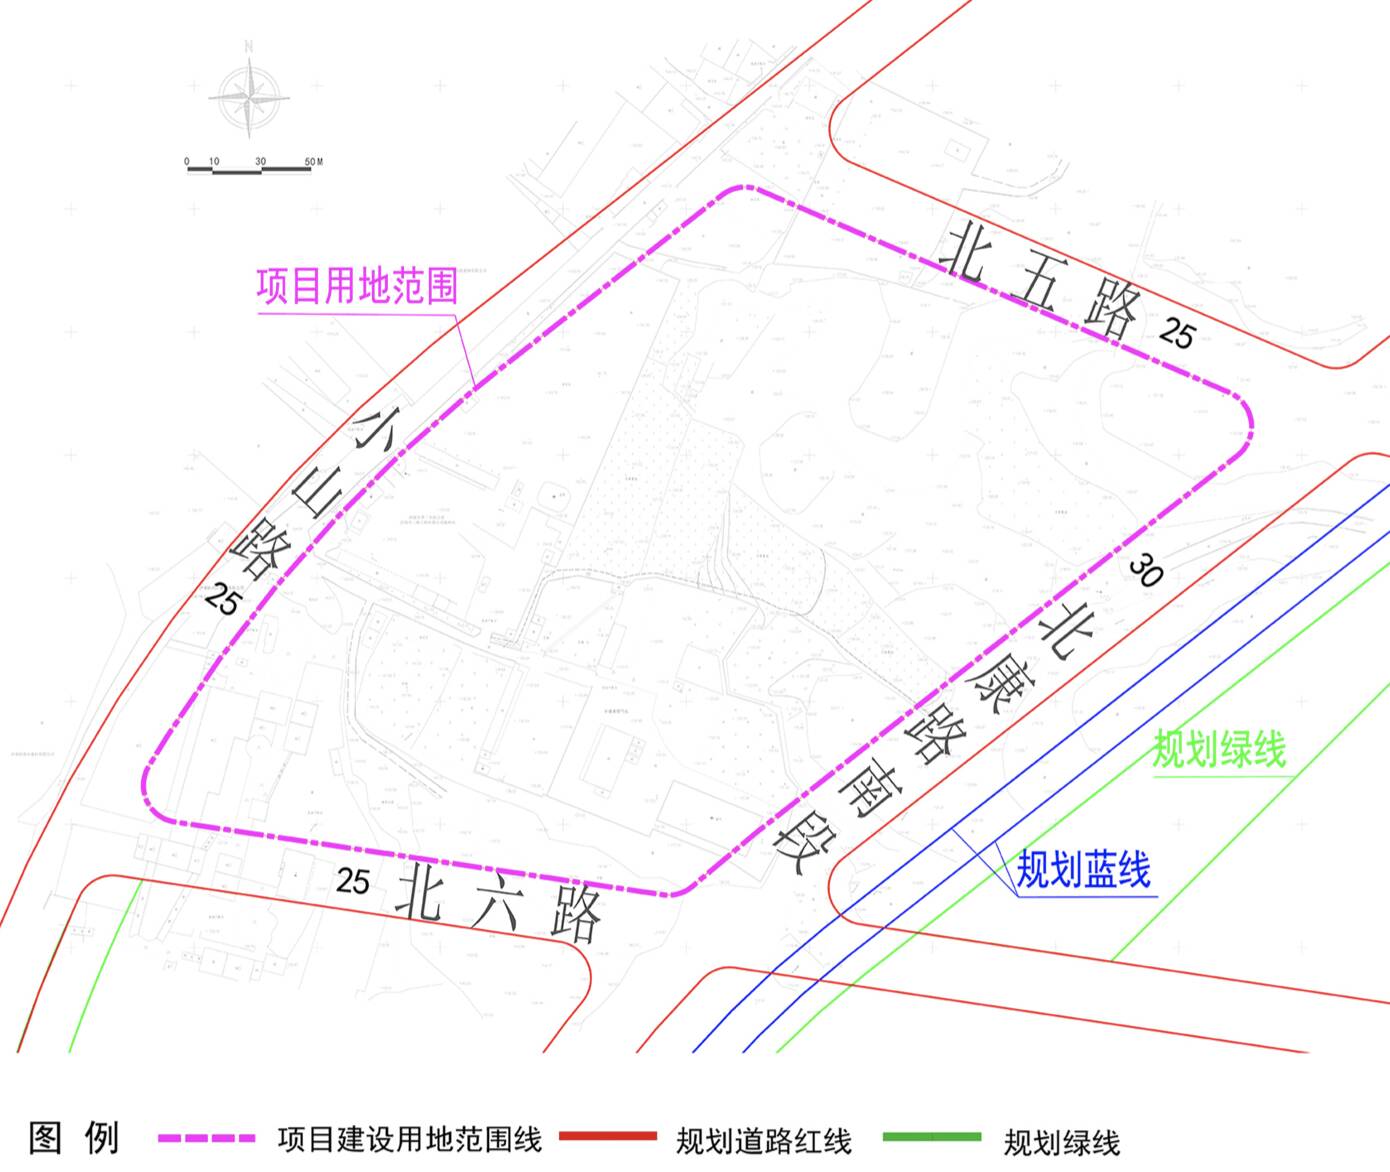 位于市中区 面积7.12公顷 济南市第一人民医院新院区用地情况公示